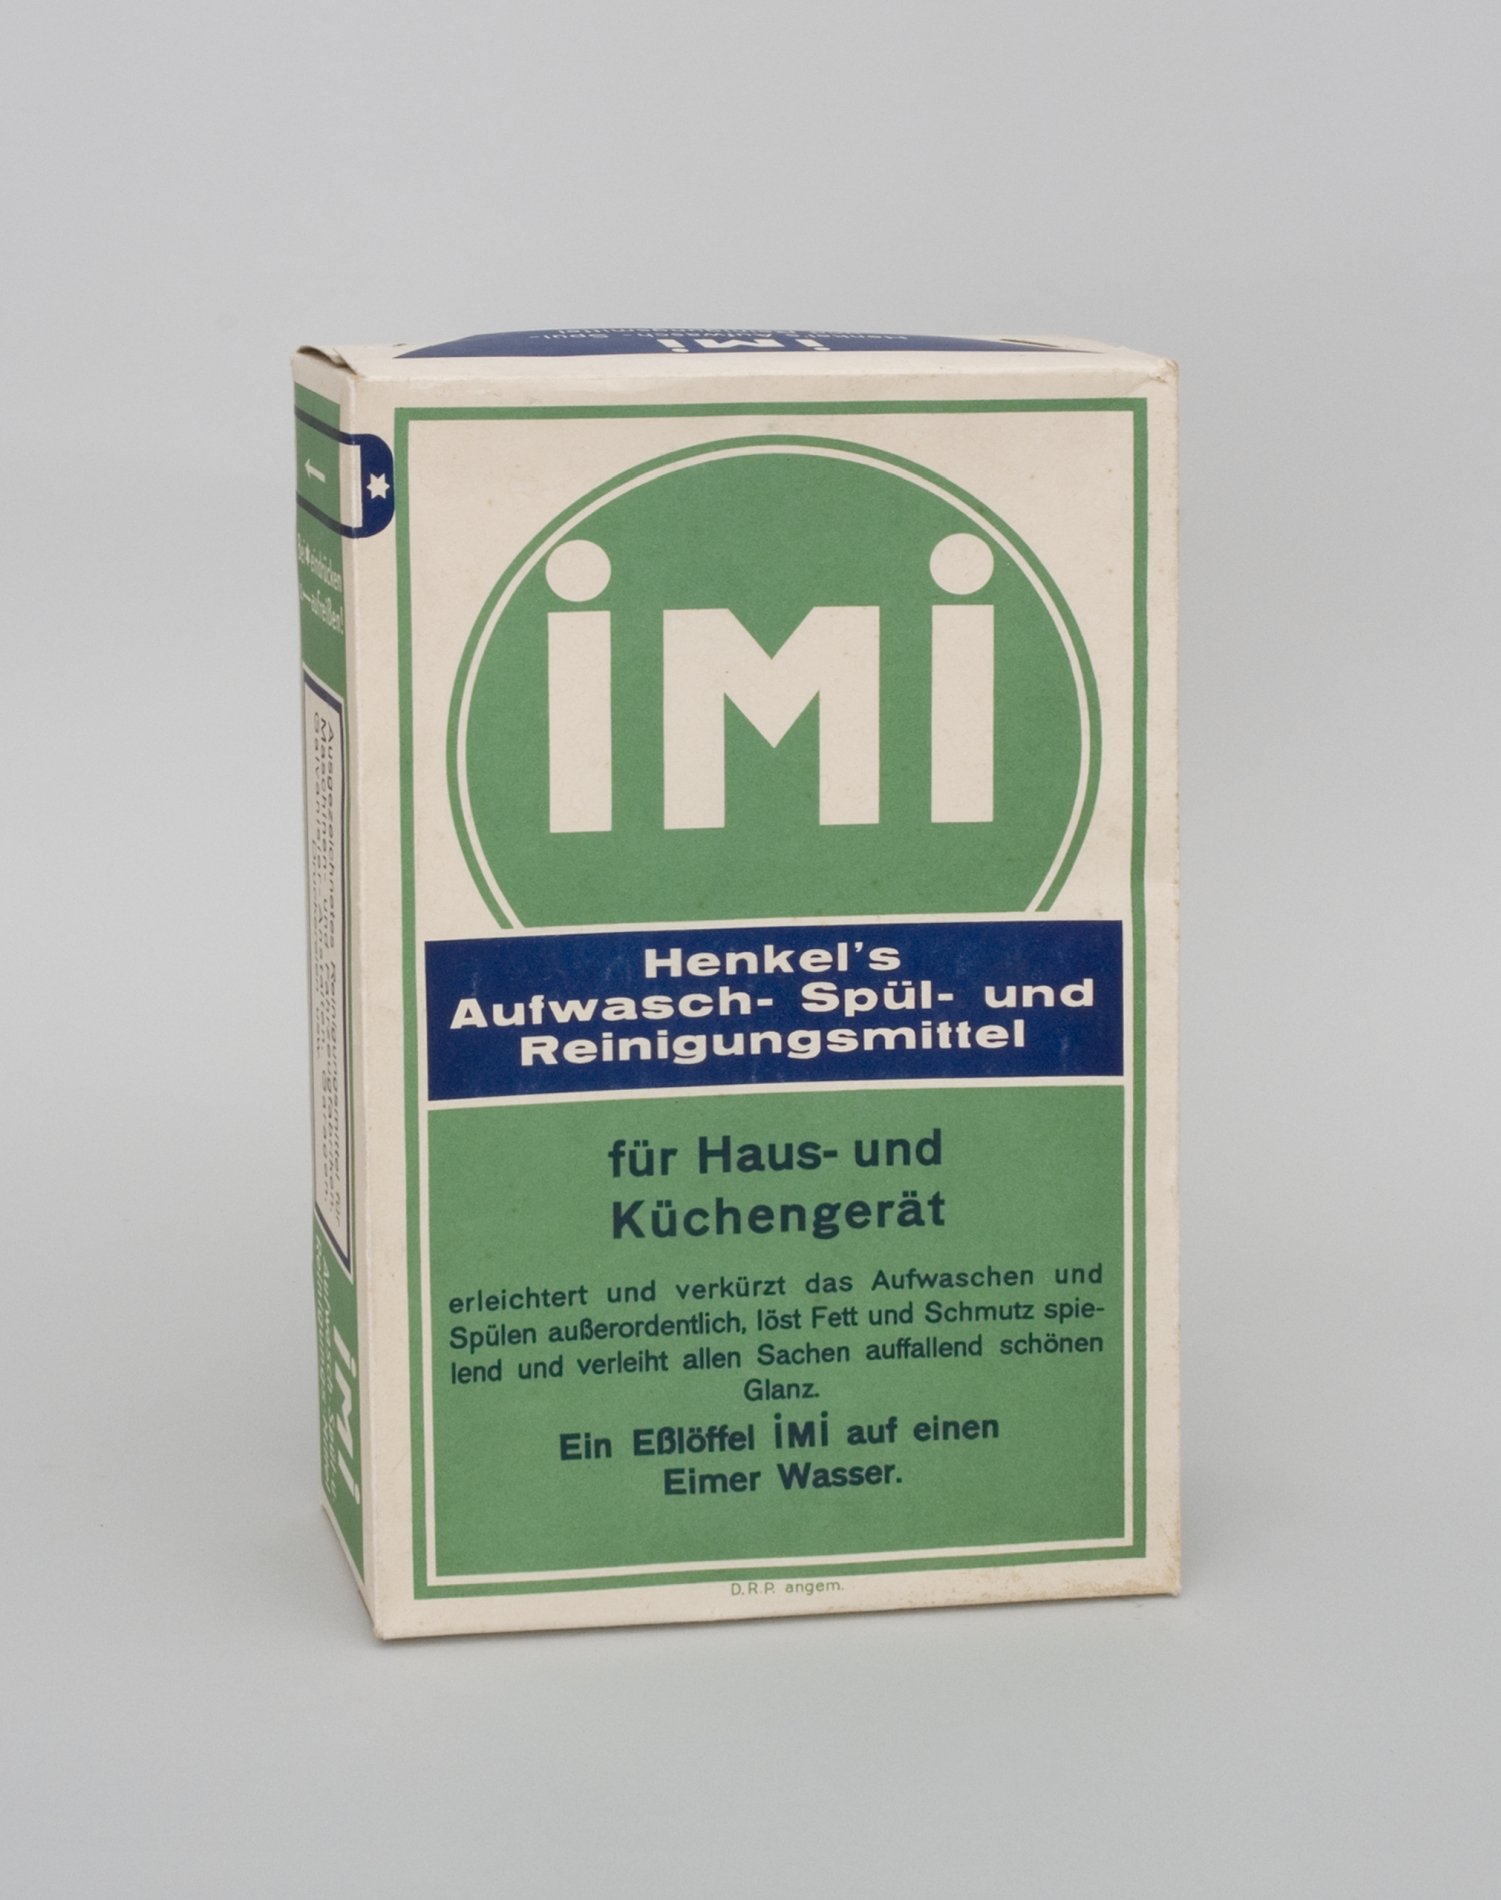 Schaupackung "IMI - Henkel's Aufwasch- Spül- und Reinigungsmittel" (Stiftung Domäne Dahlem - Landgut und Museum, Weiternutzung nur mit Genehmigung des Museums CC BY-NC-SA)